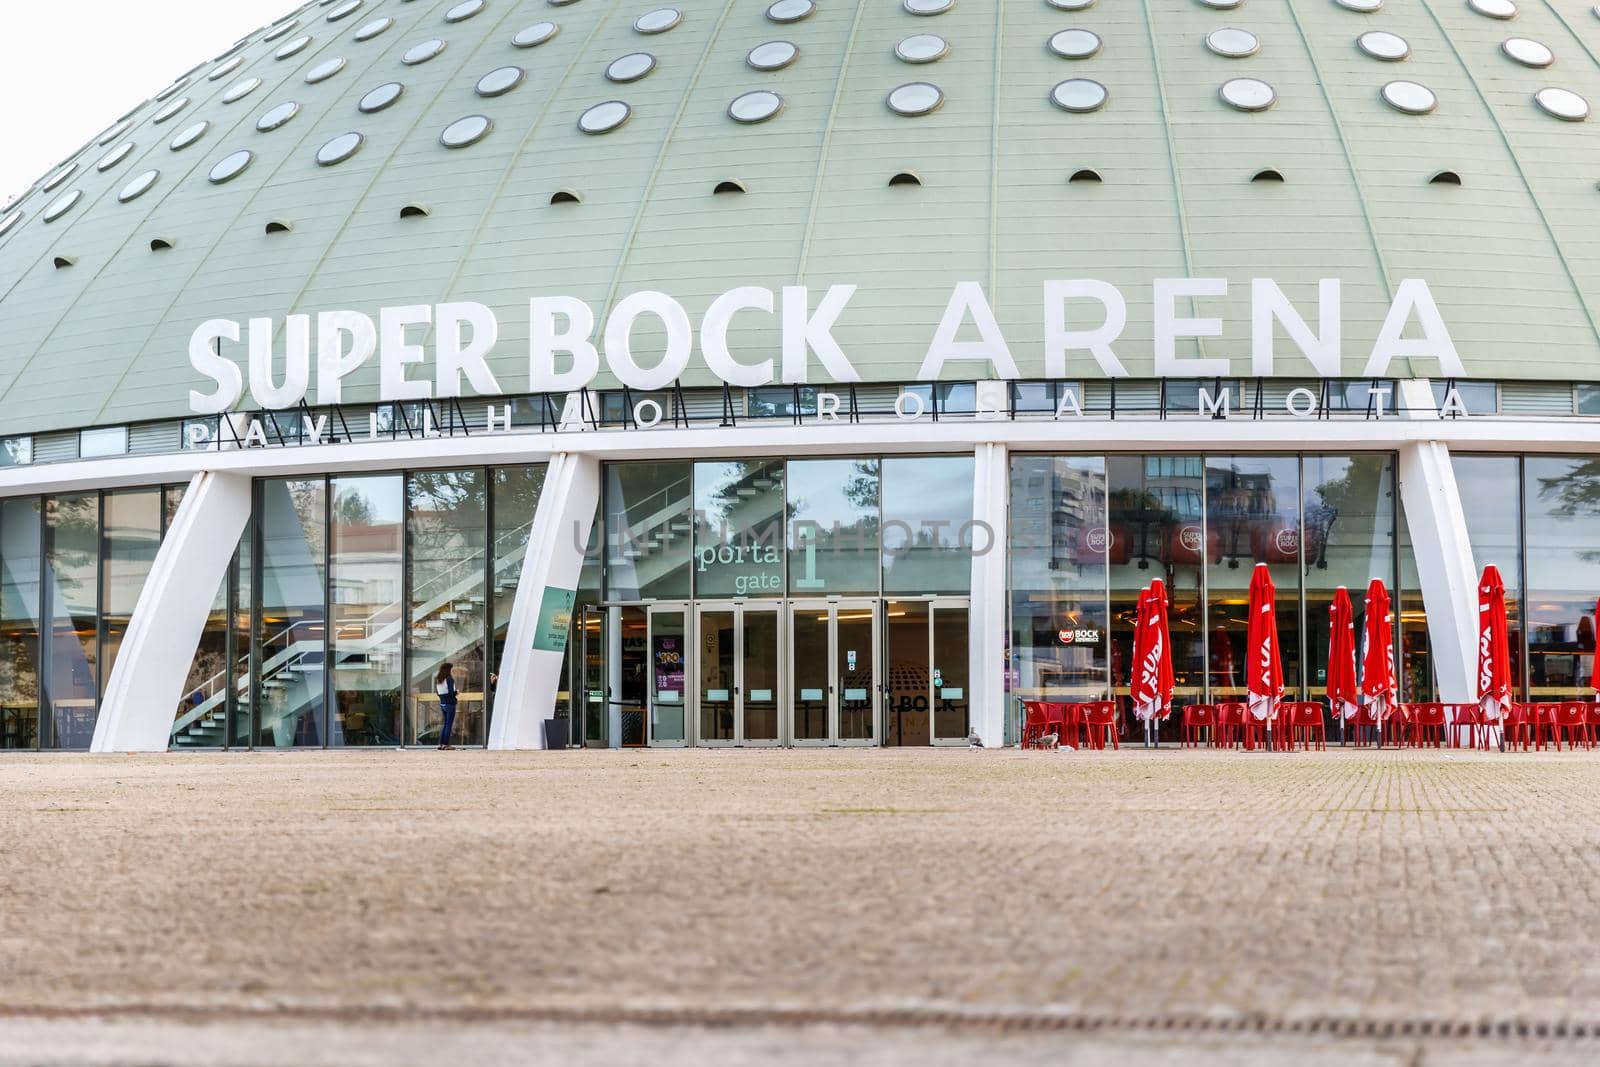 Super Bock Arena pavilion Rosa Mota in Porto, Portugal by AtlanticEUROSTOXX